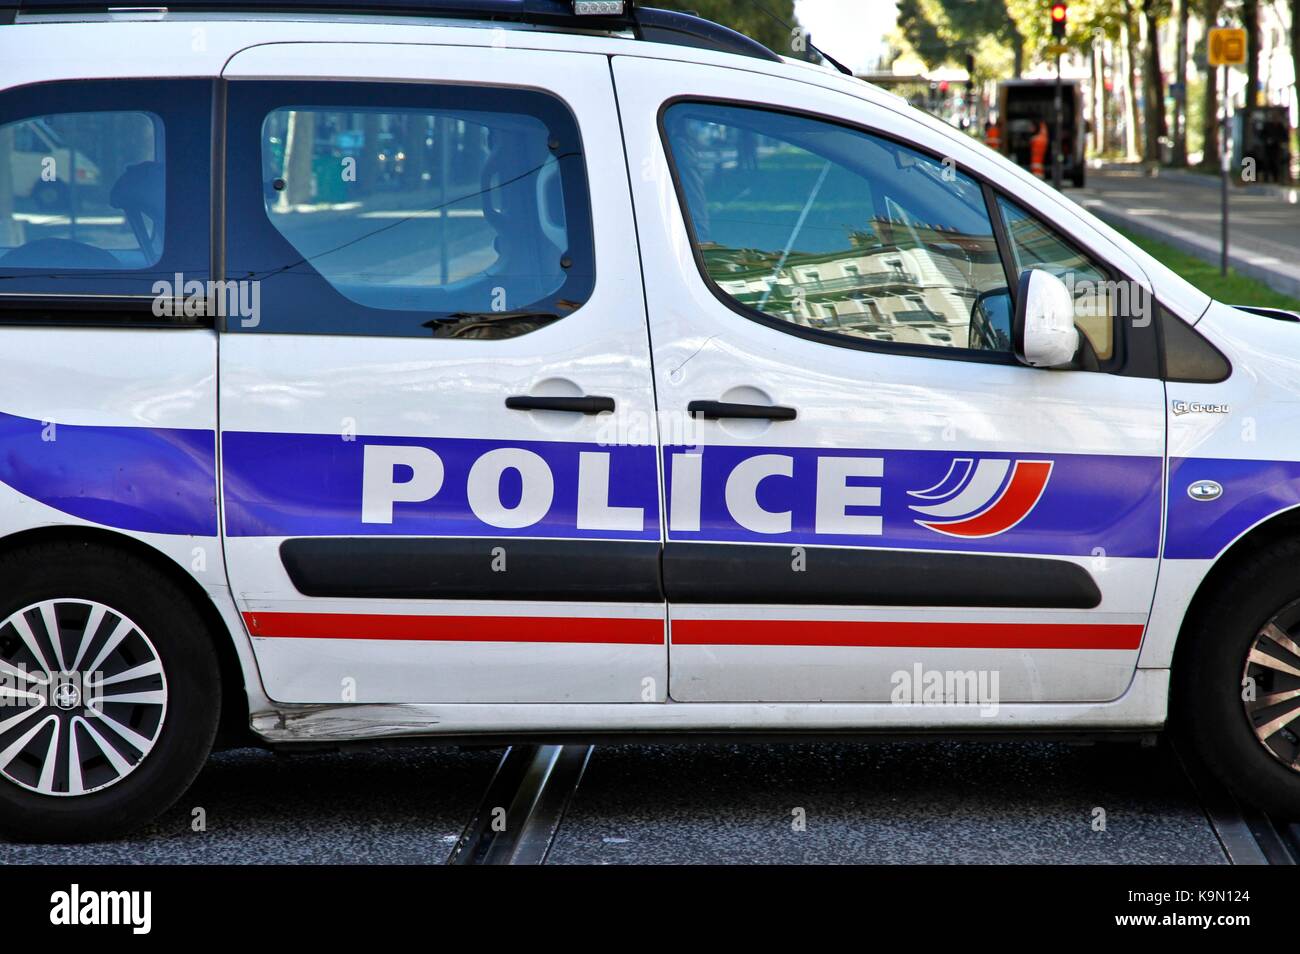 Illustration de la voiture de la police et des forces de sécurité. grenoble, Isère, Rhône Alpes Auvergne. Grenoble, France - 21/09/2017 L'illustration d Banque D'Images